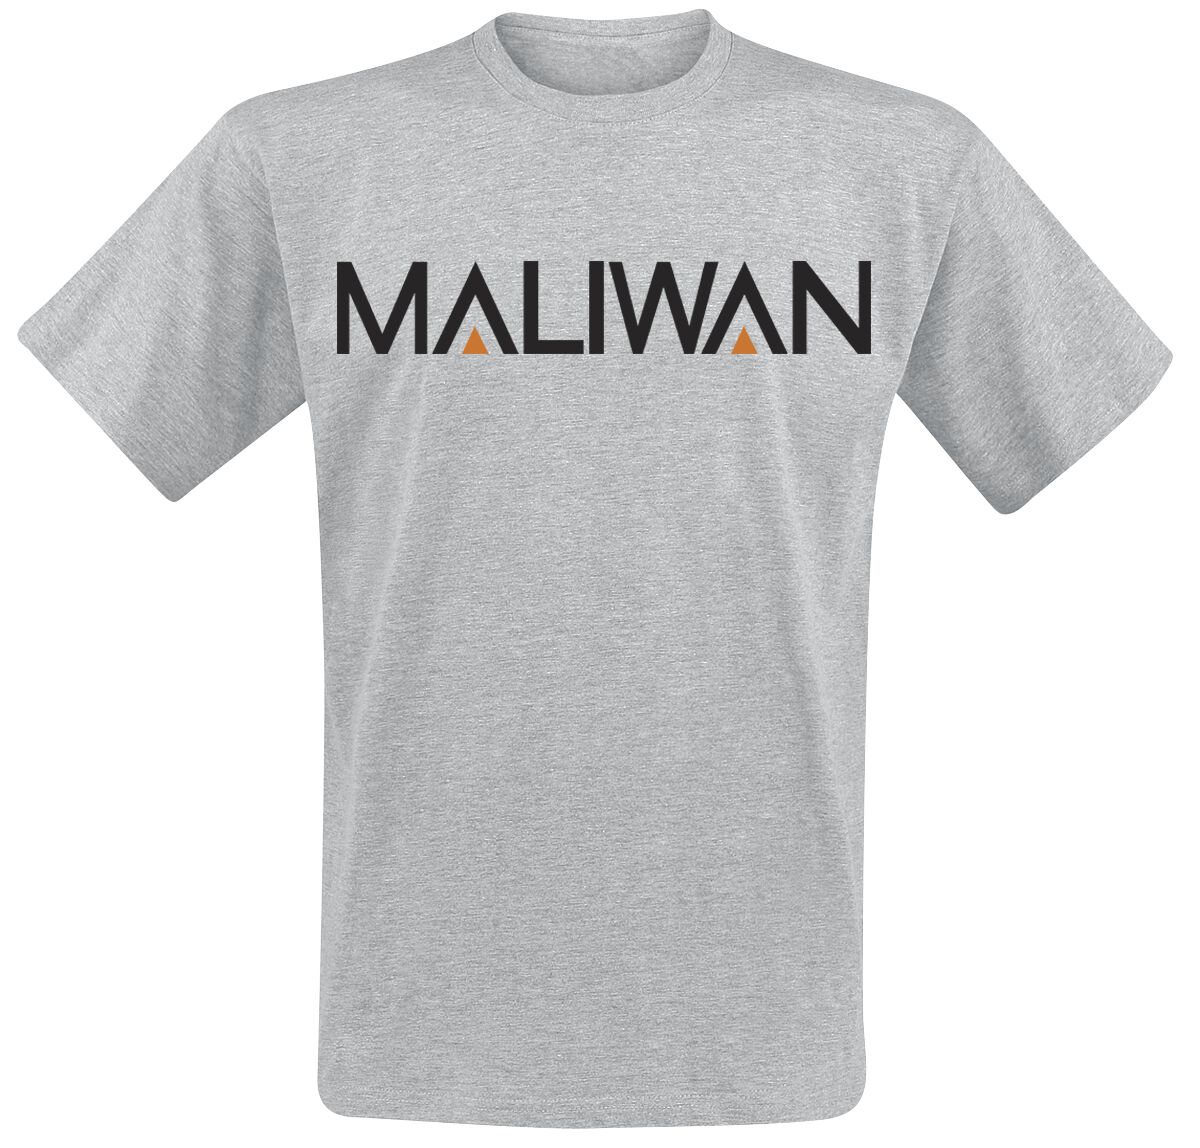 Borderlands 3 - Maliwan T-Shirt grau meliert in S